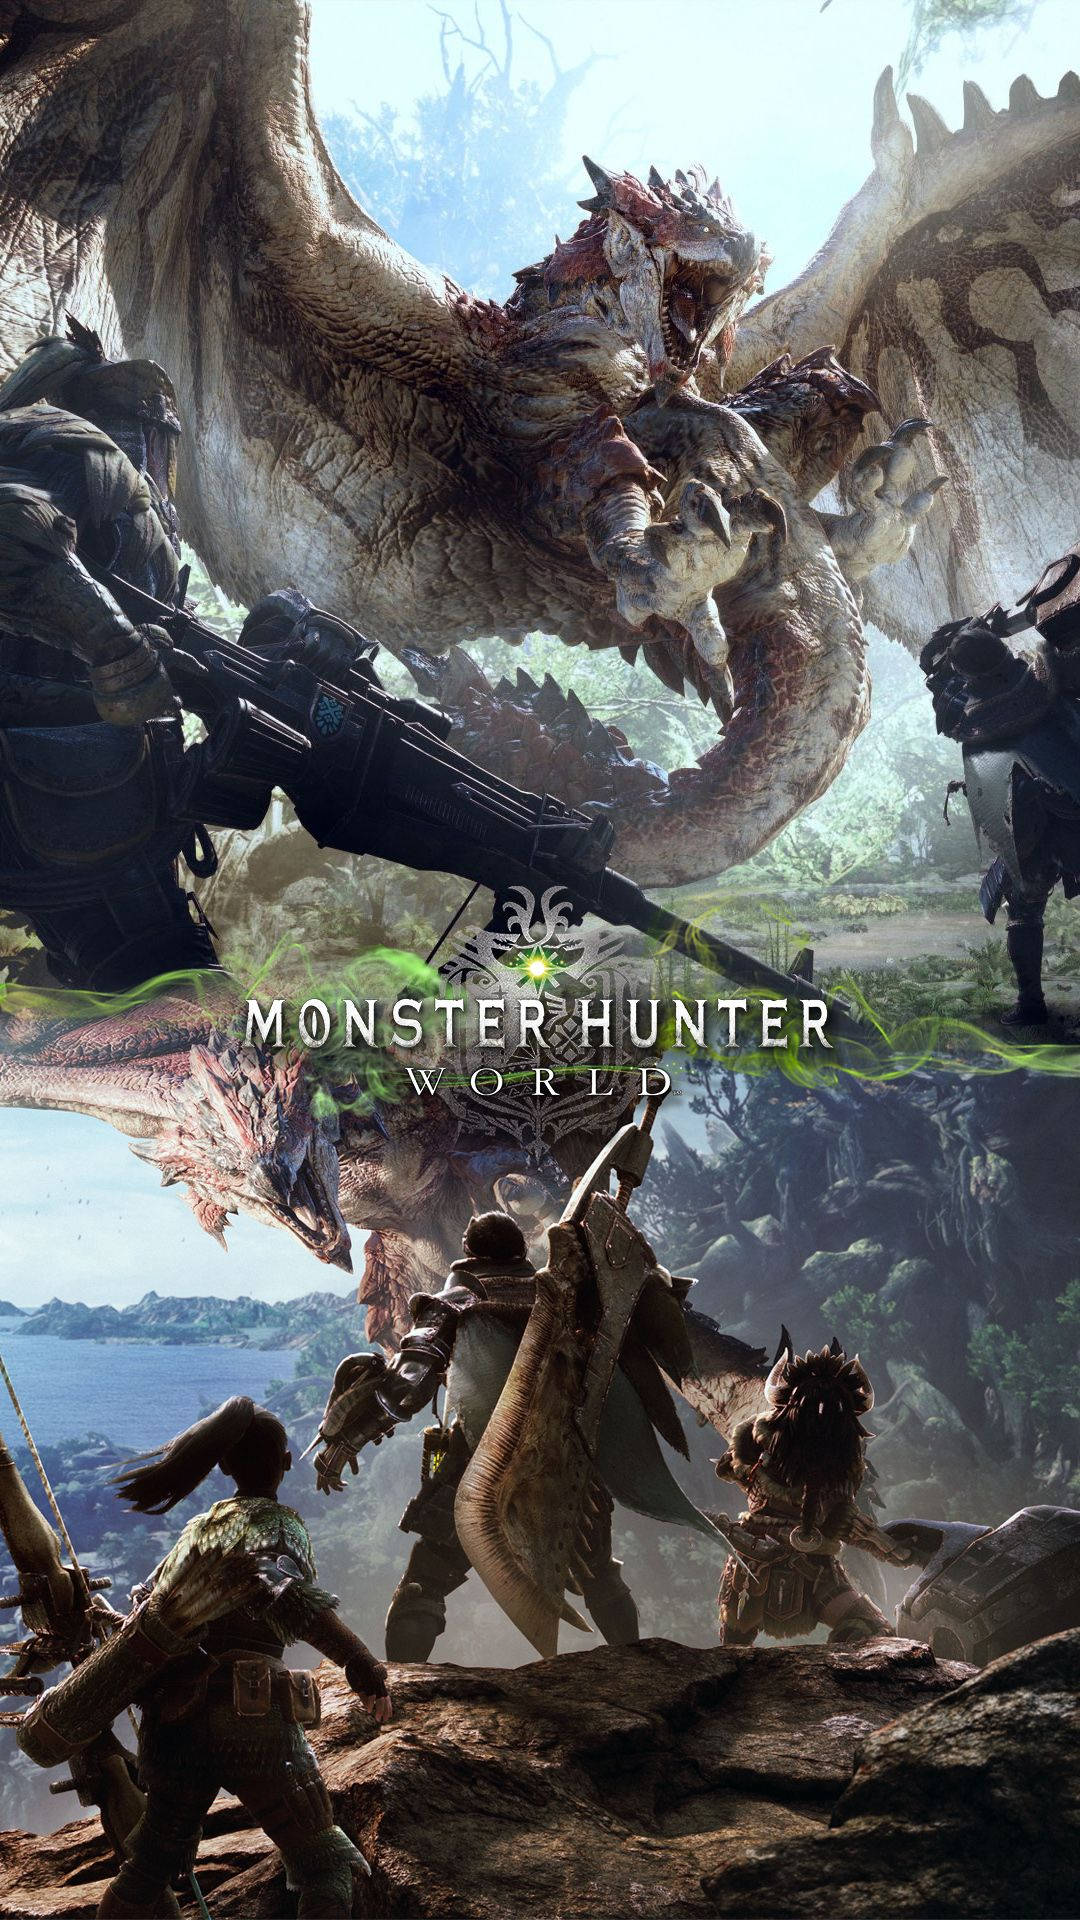 Estejapronto Para Embarcar Na Sua Aventura Definitiva Com Monster Hunter No Seu Próximo Smartphone! Papel de Parede